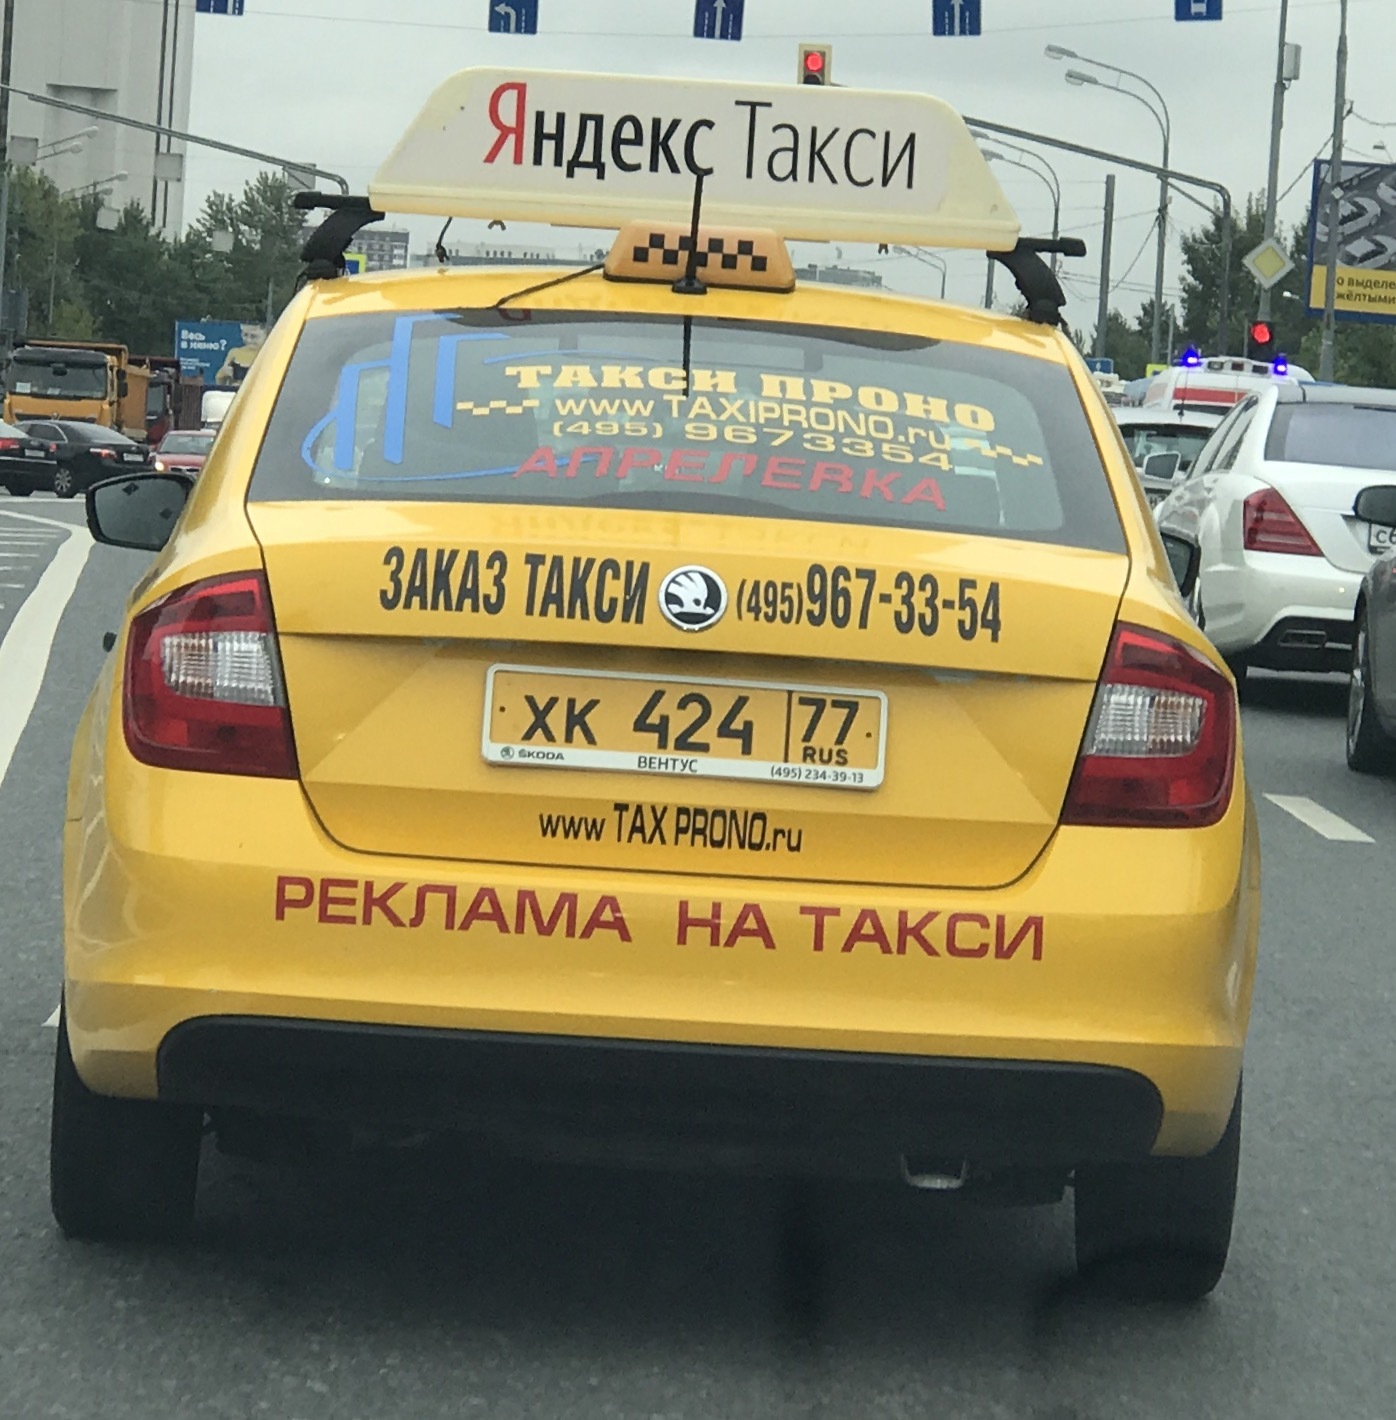 Имена водителей такси